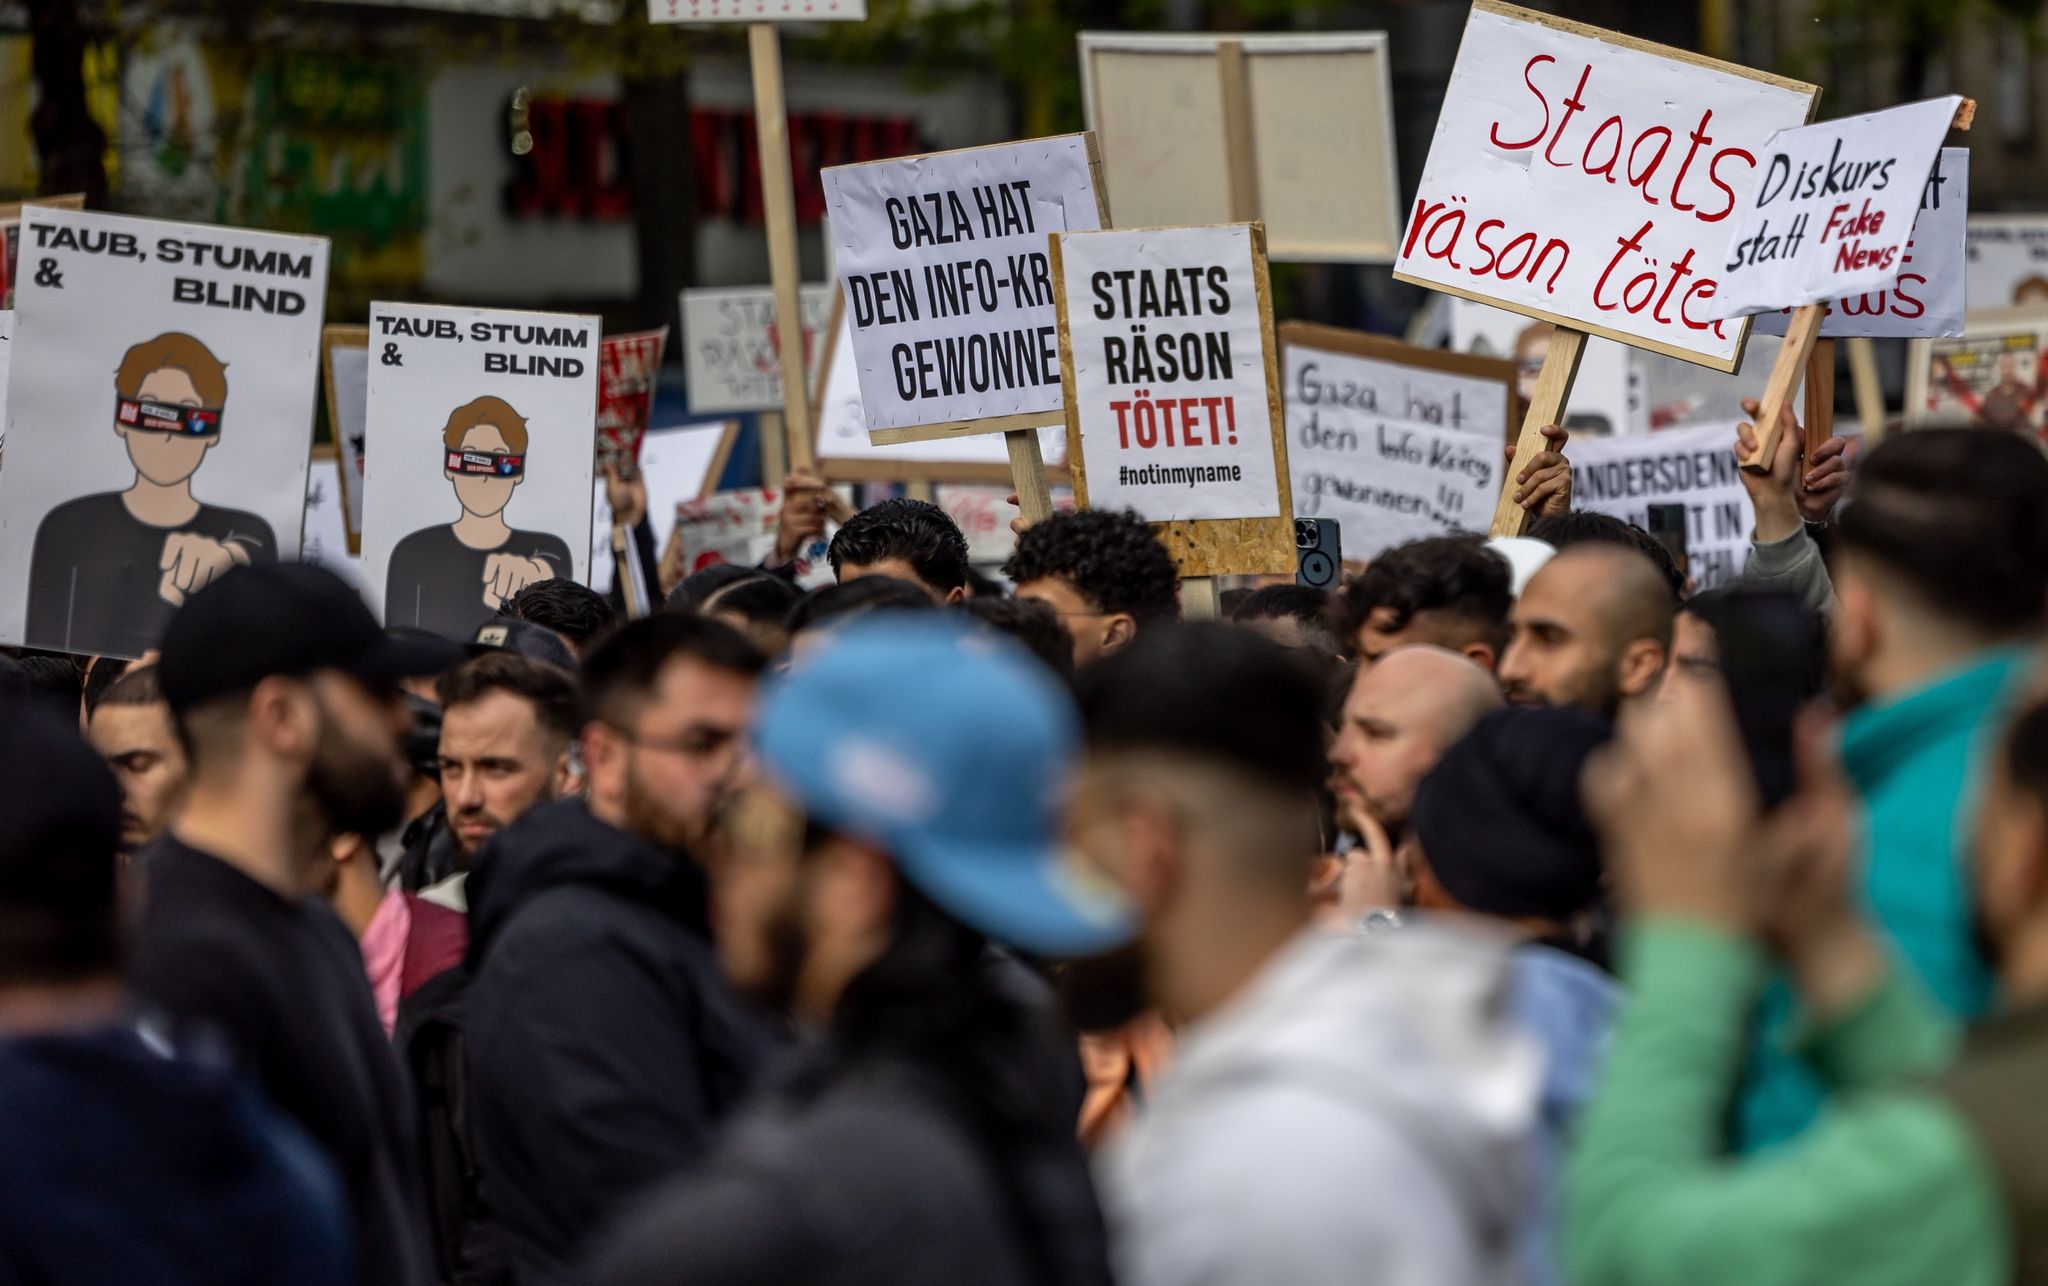 interreligiöses forum hamburg verurteilt islamisten-demos